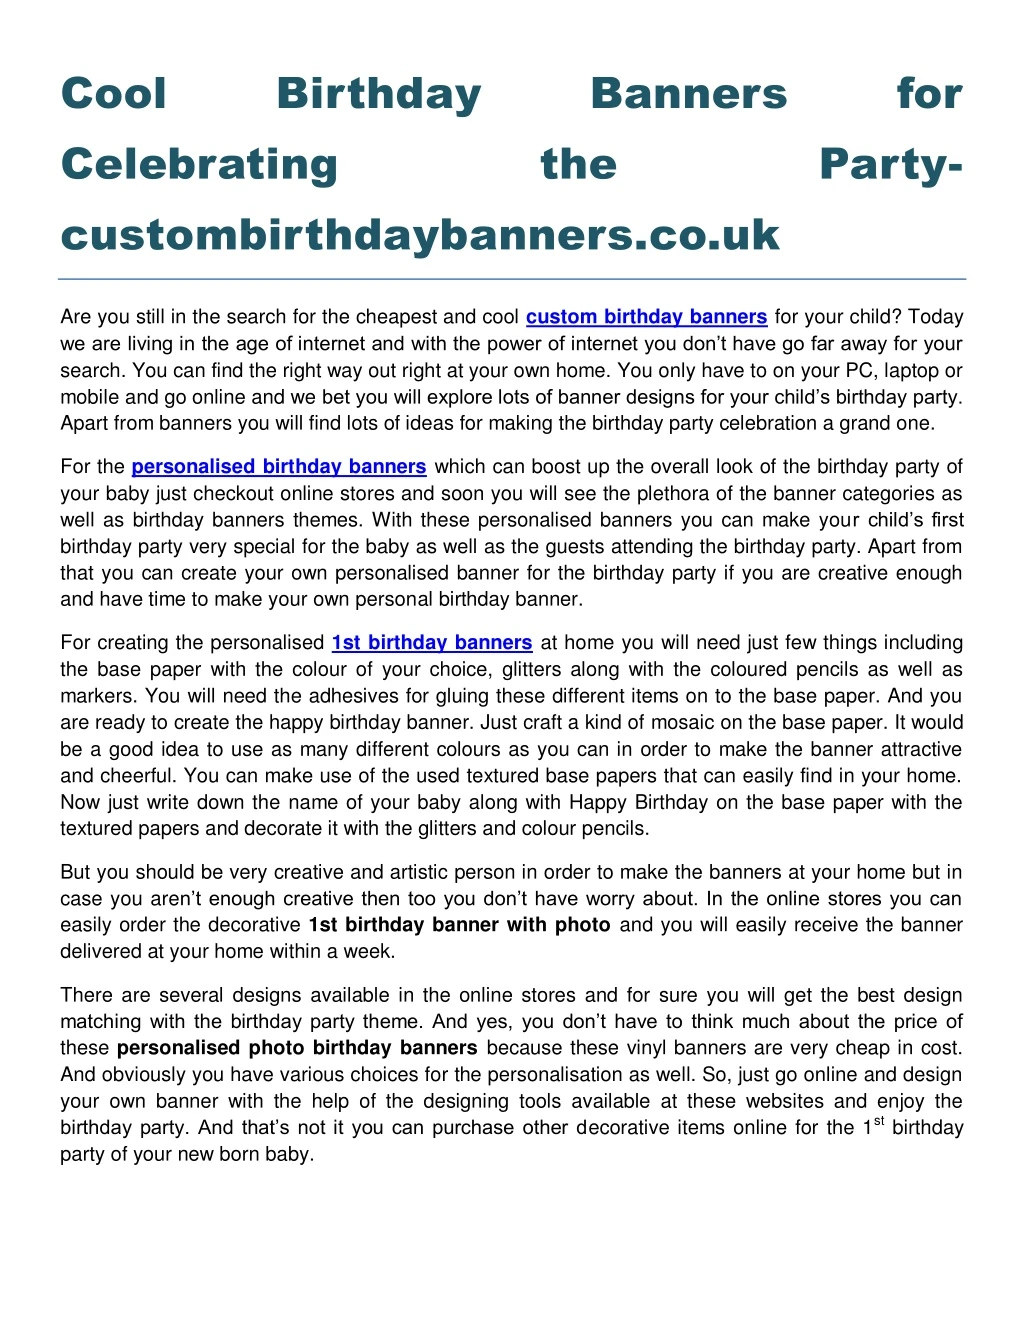 cool celebrating custombirthdaybanners co uk